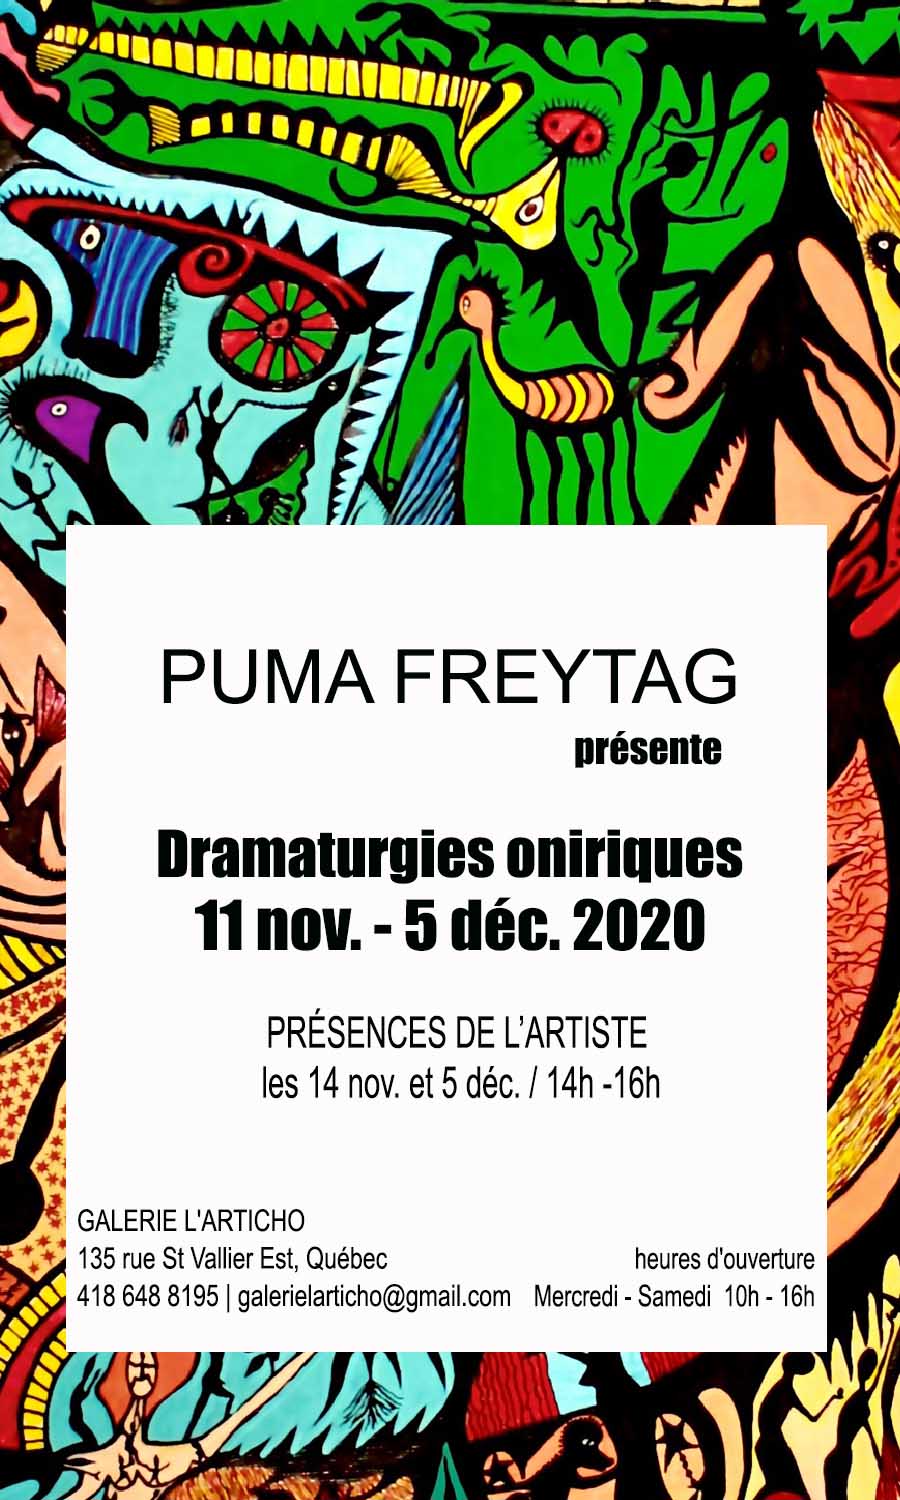 Exposition Dramaturgies oniriques présentée par Puma Freytag